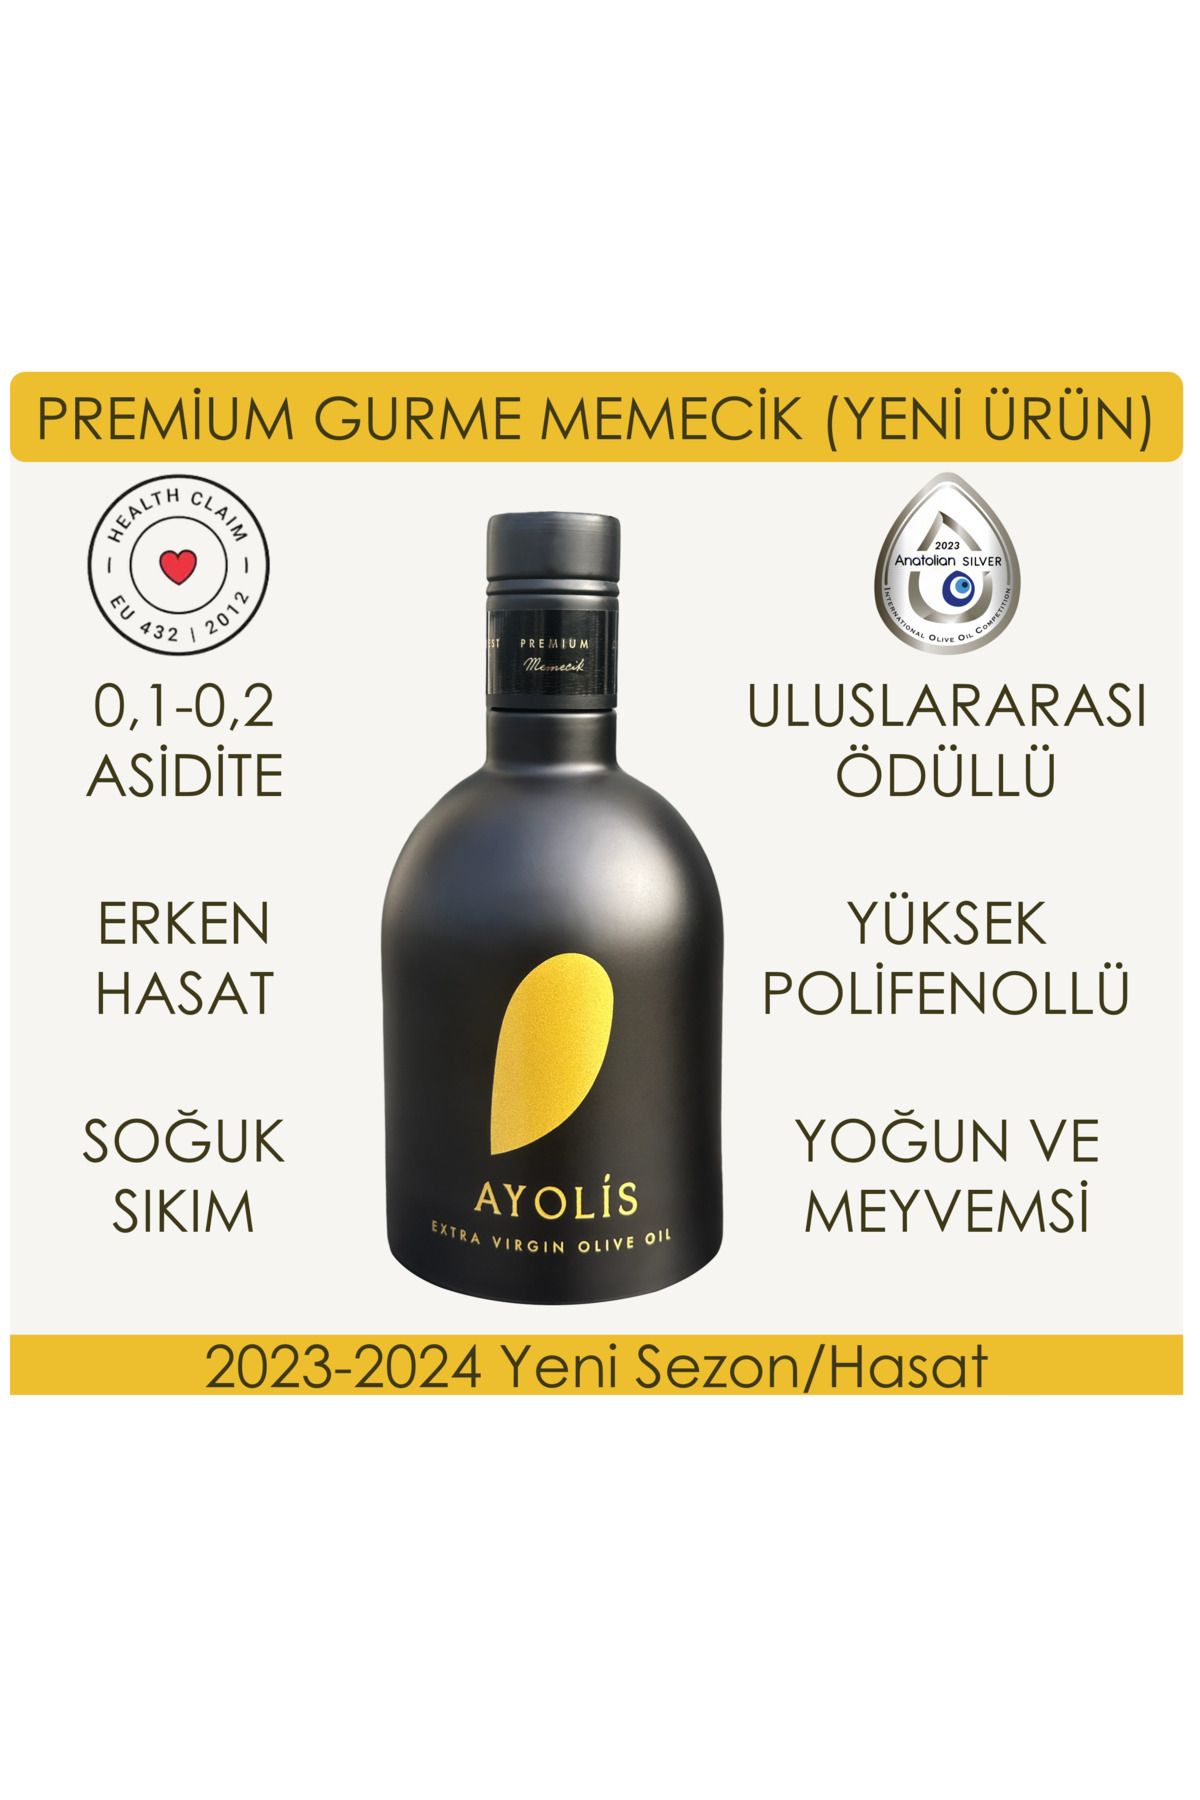 Ayolis Premium Gurme Memecik 500 Ml Yüksek Polifenollü Erken Hasat Soğuk Sıkım Natürel Sızma Zeytinyağı